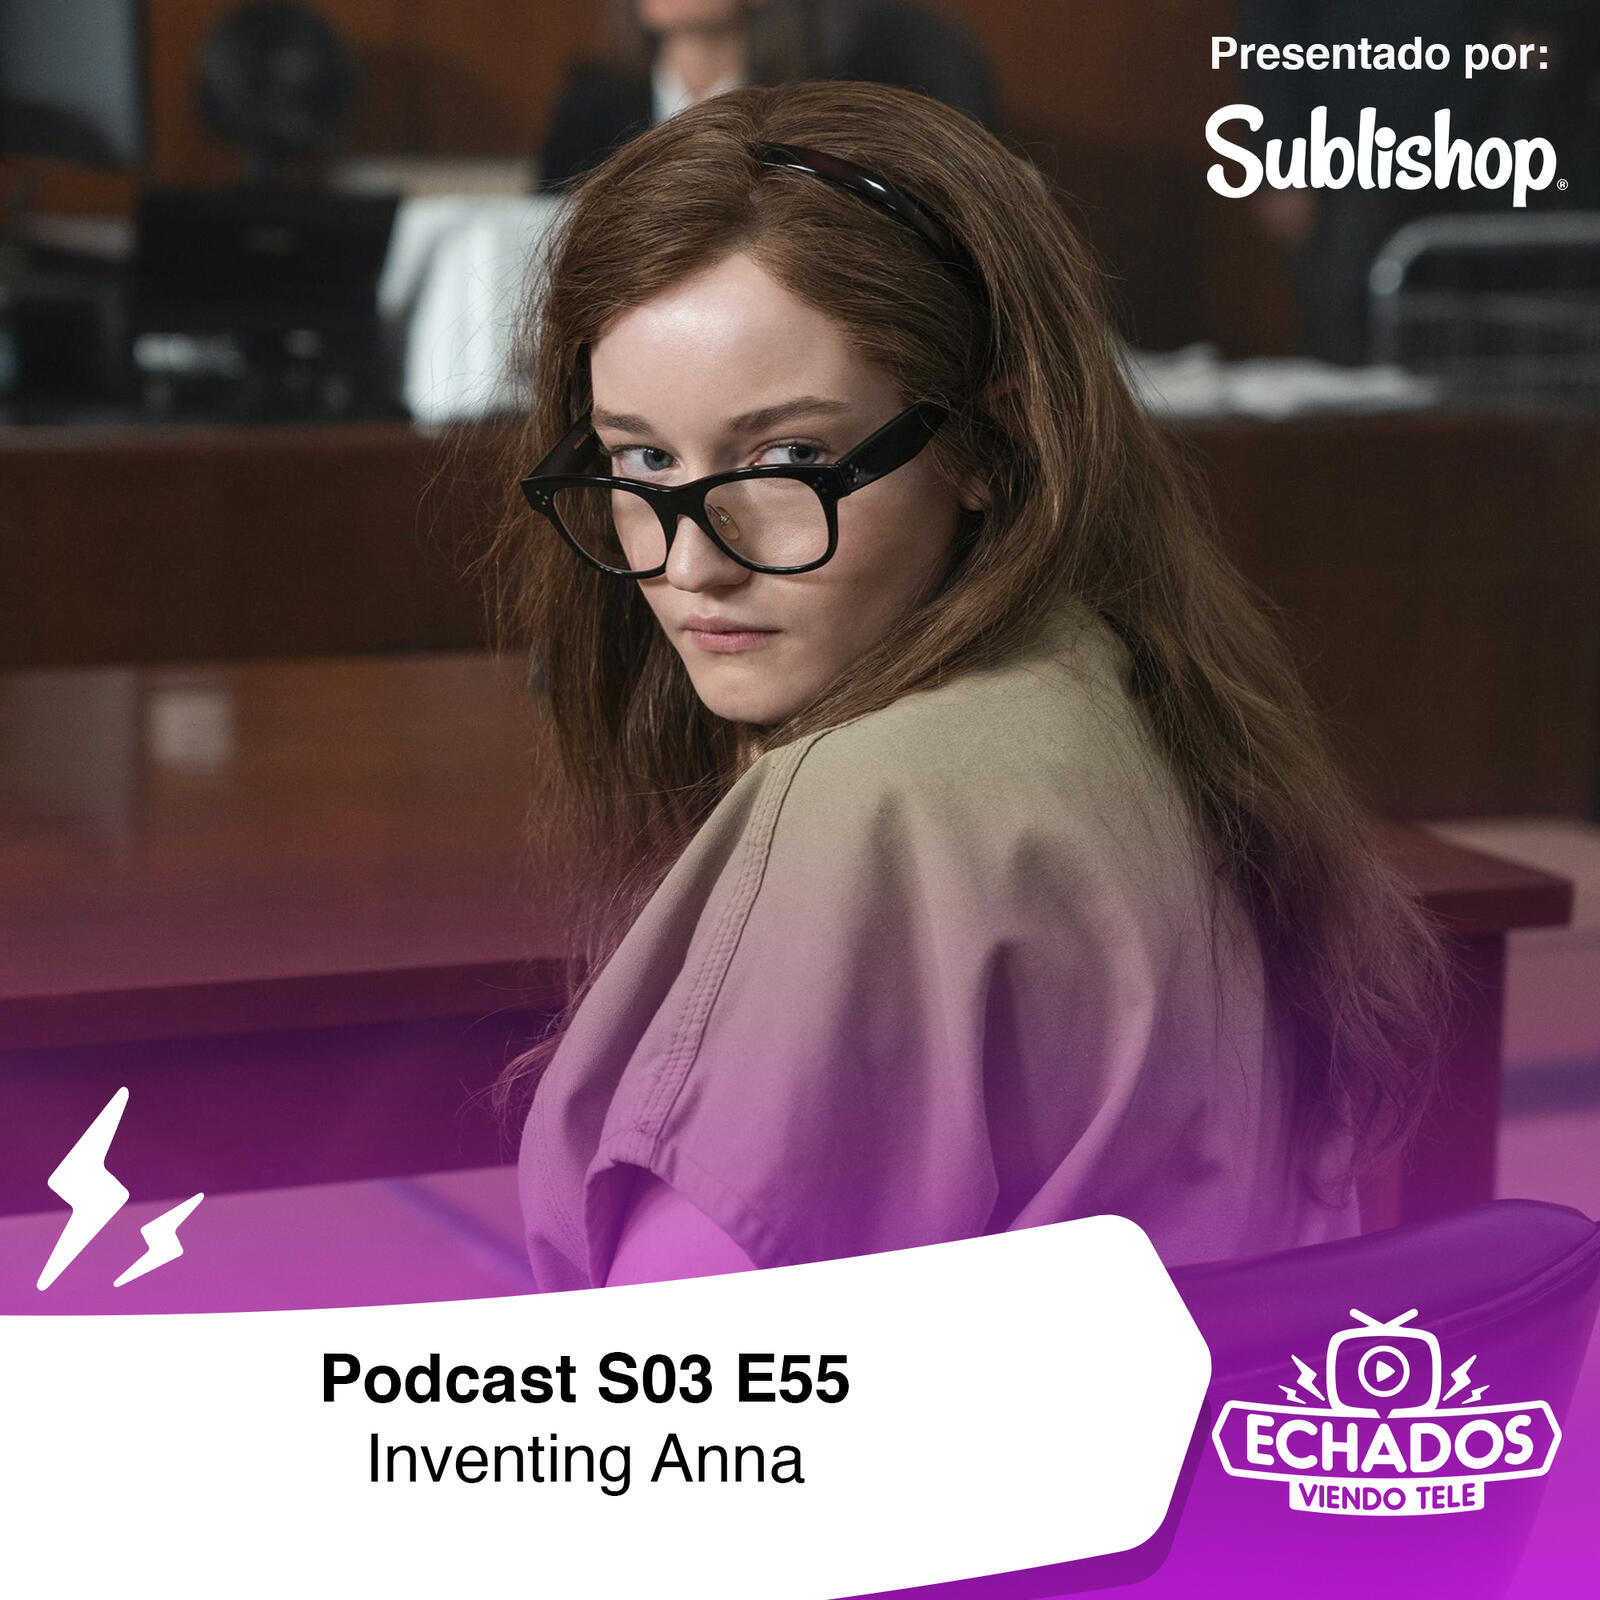 S3 Ep55: ¿Nos estafaron con la miniserie Inventing Anna?